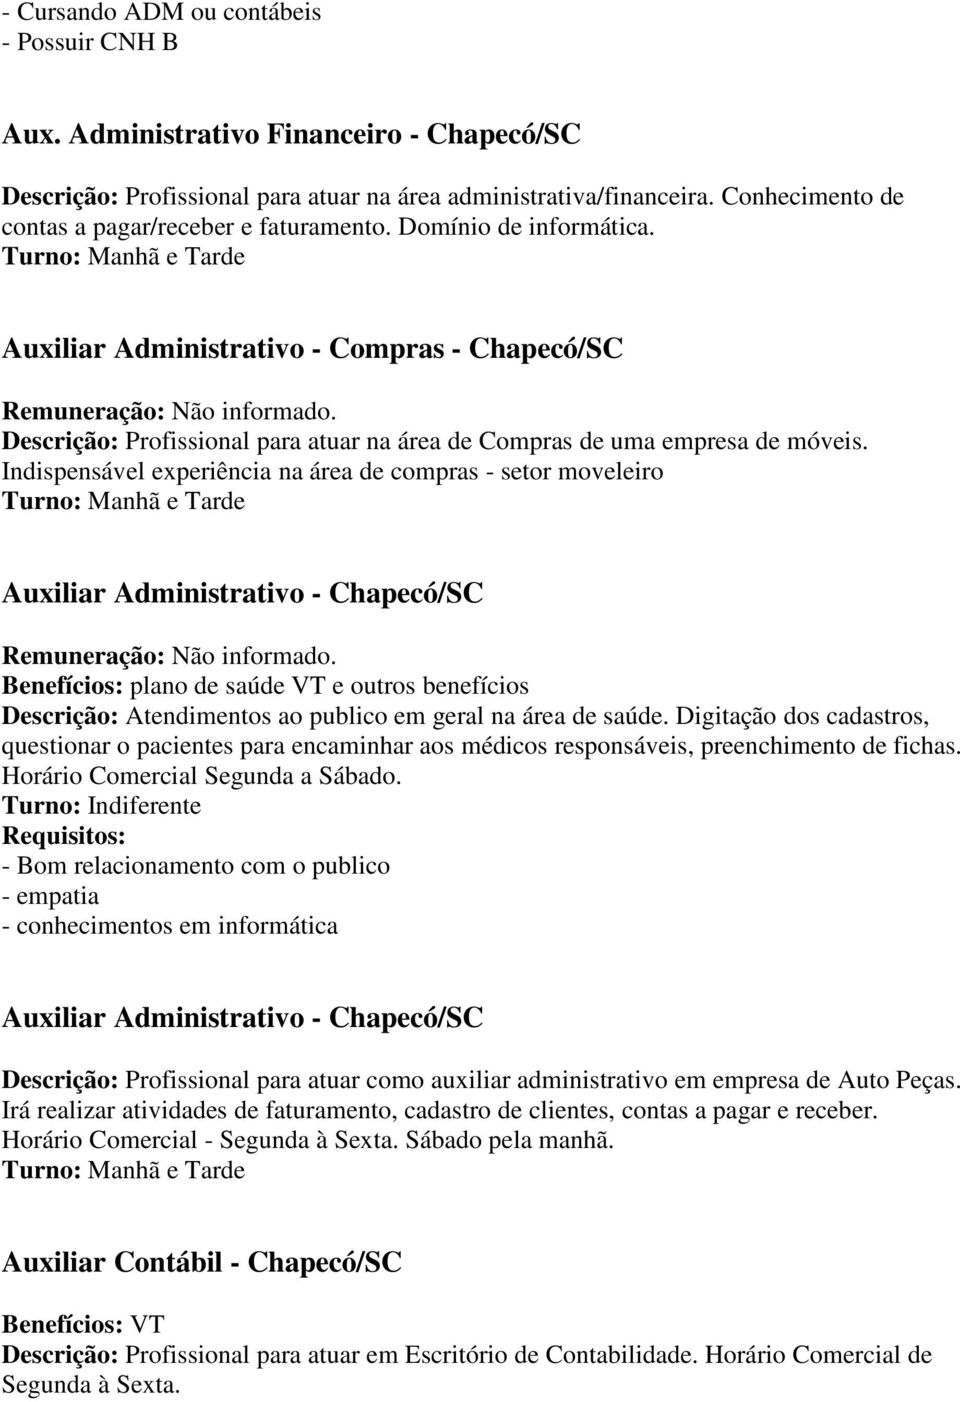 Auxiliar Administrativo - Compras - Chapecó/SC Descrição: Profissional para atuar na área de Compras de uma empresa de móveis.